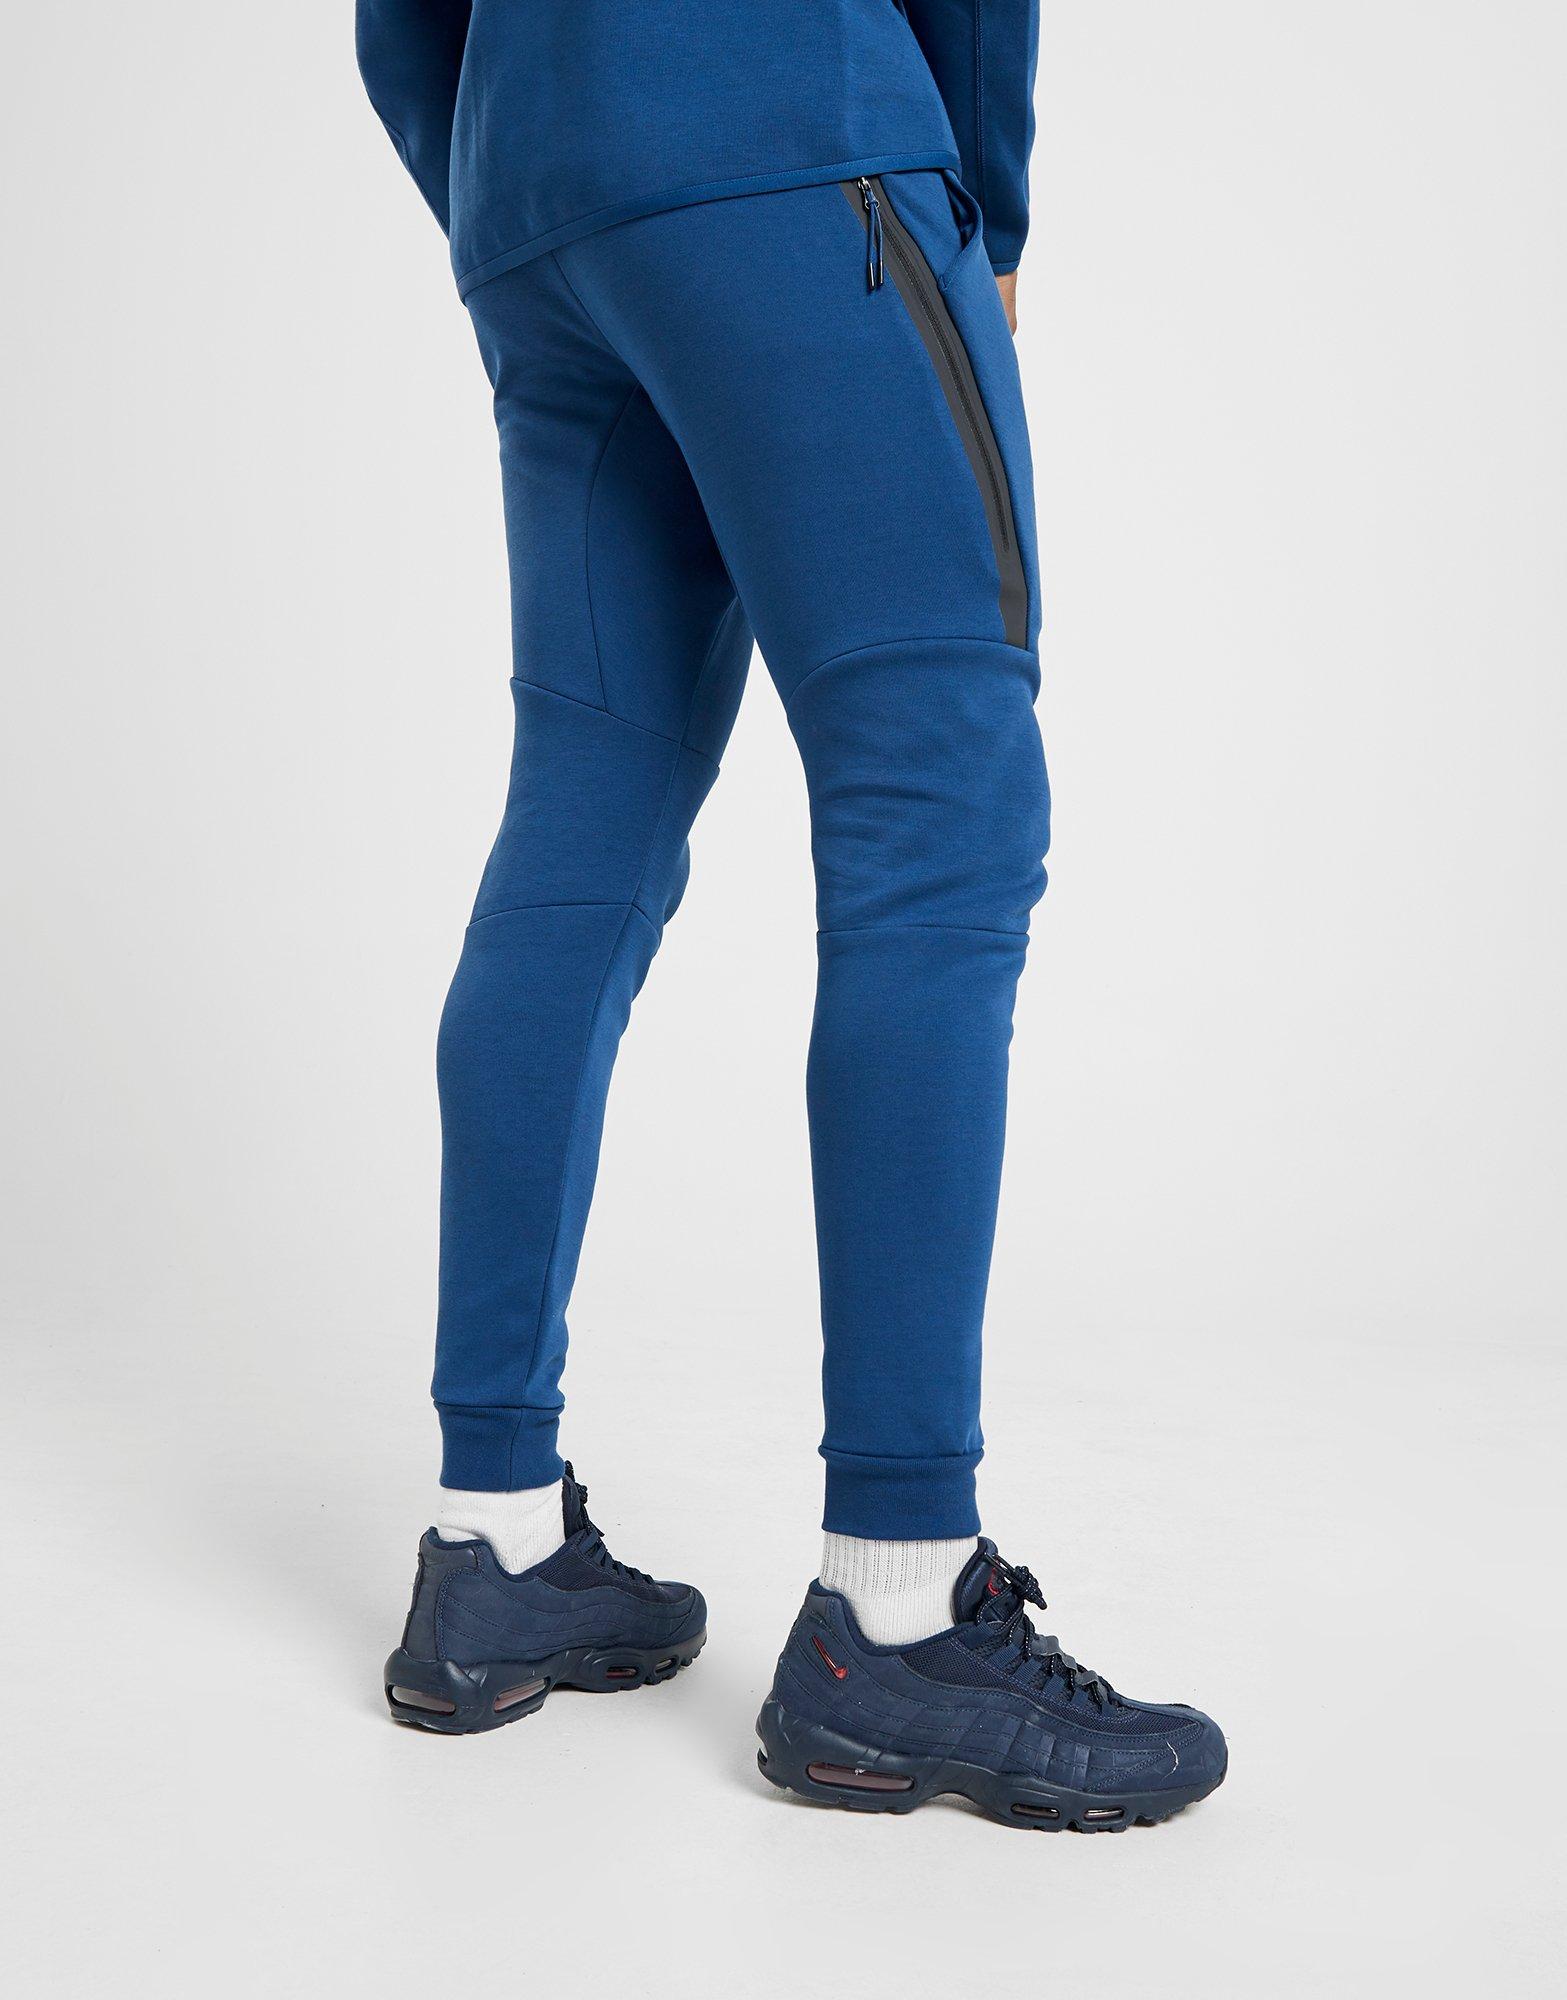 blue tech pants